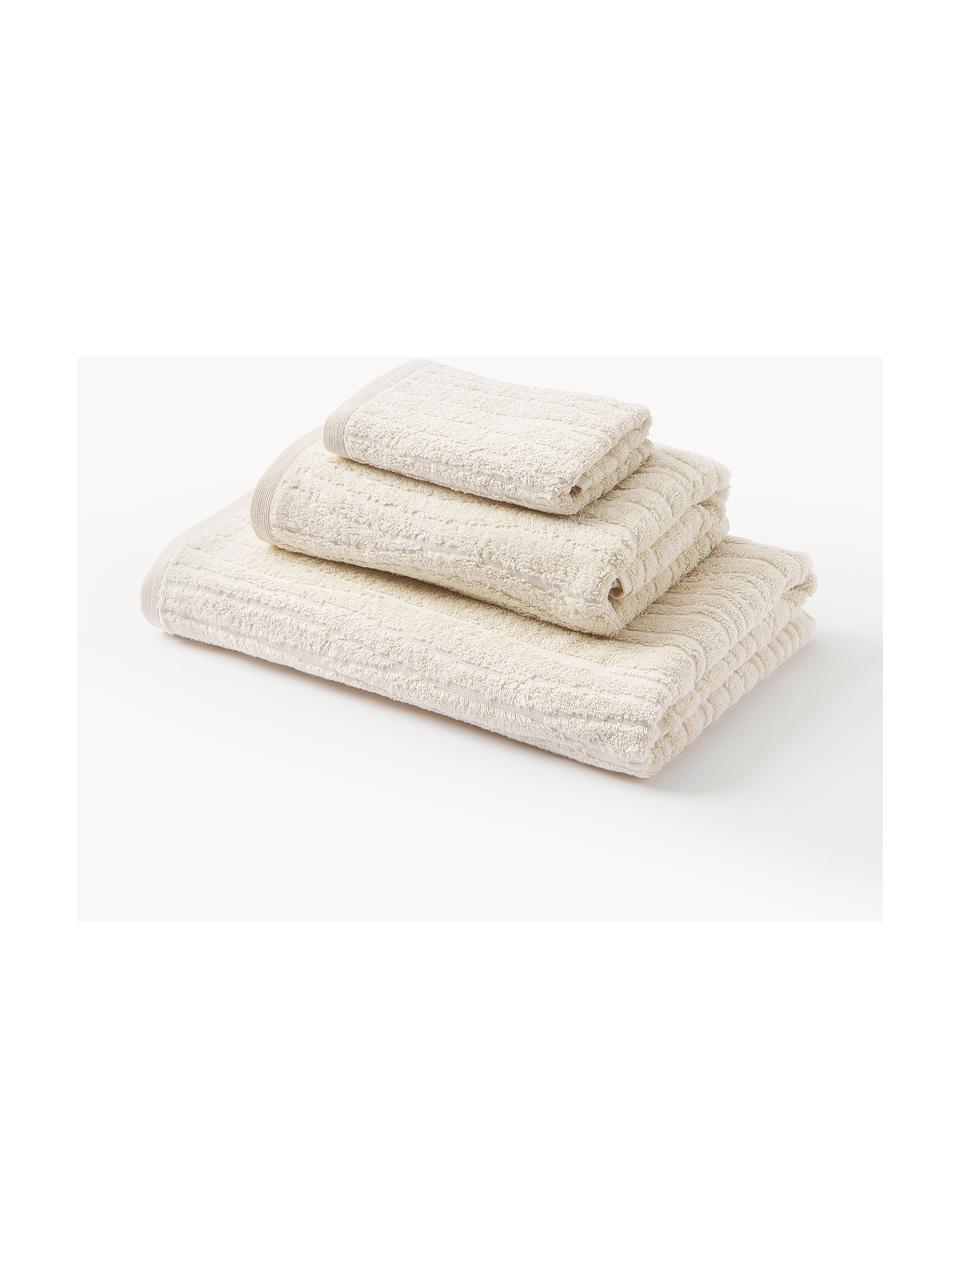 Lot de serviettes de bain en coton Audrina, tailles variées, Beige clair, 3 éléments (1 serviette invité, 1 serviette de toilette et 1 drap de bain)